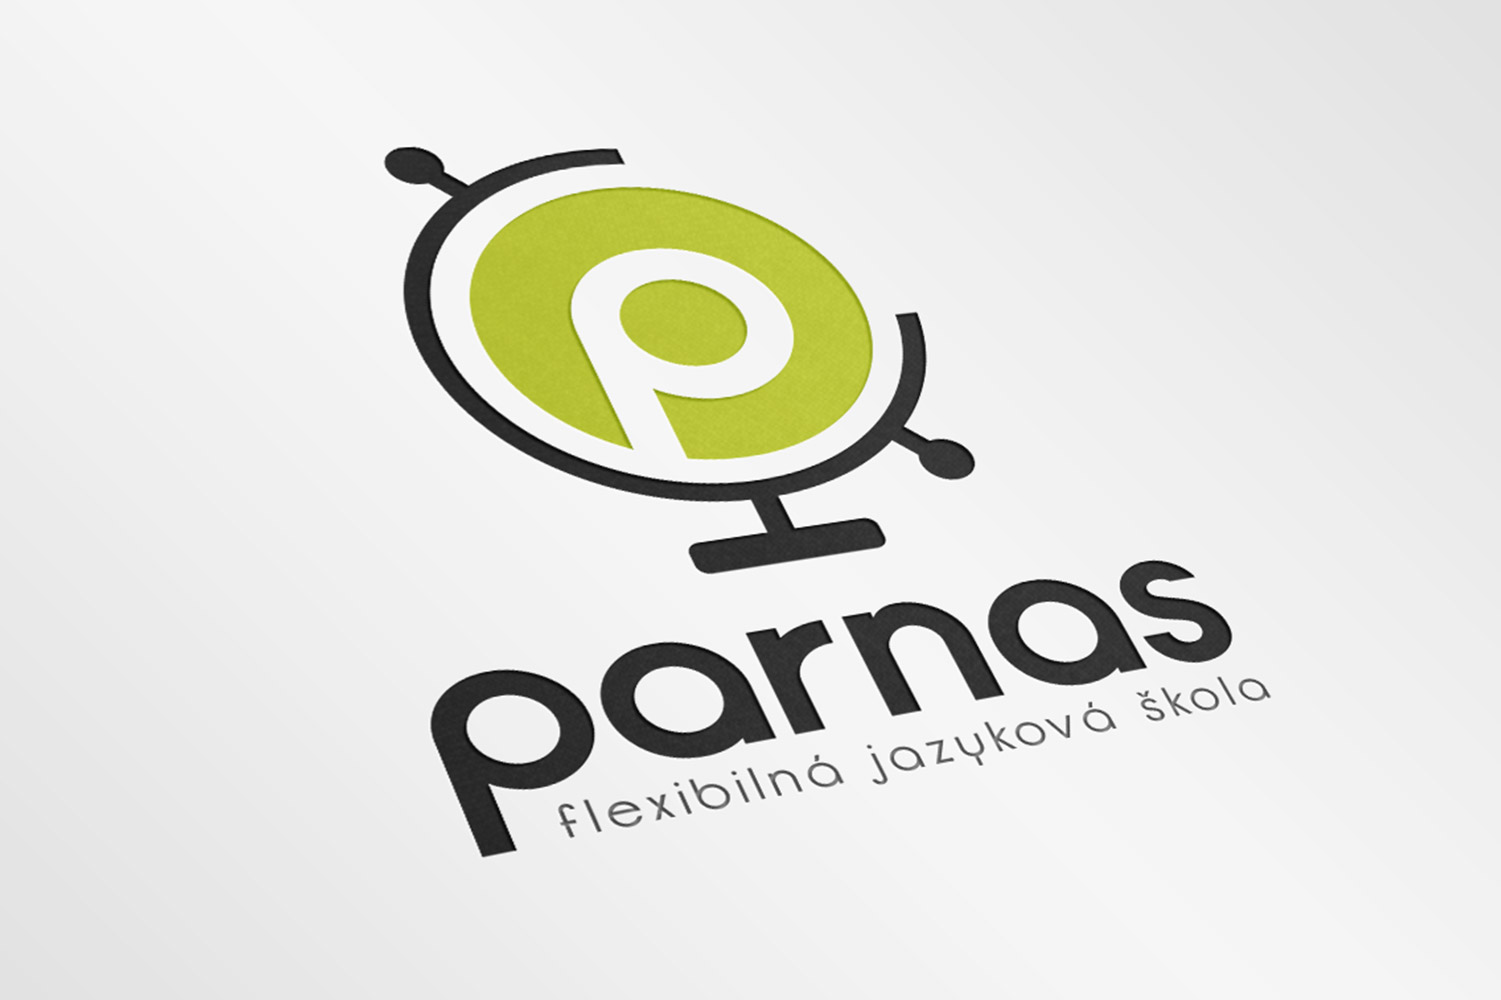 Parnas, corporate identity image